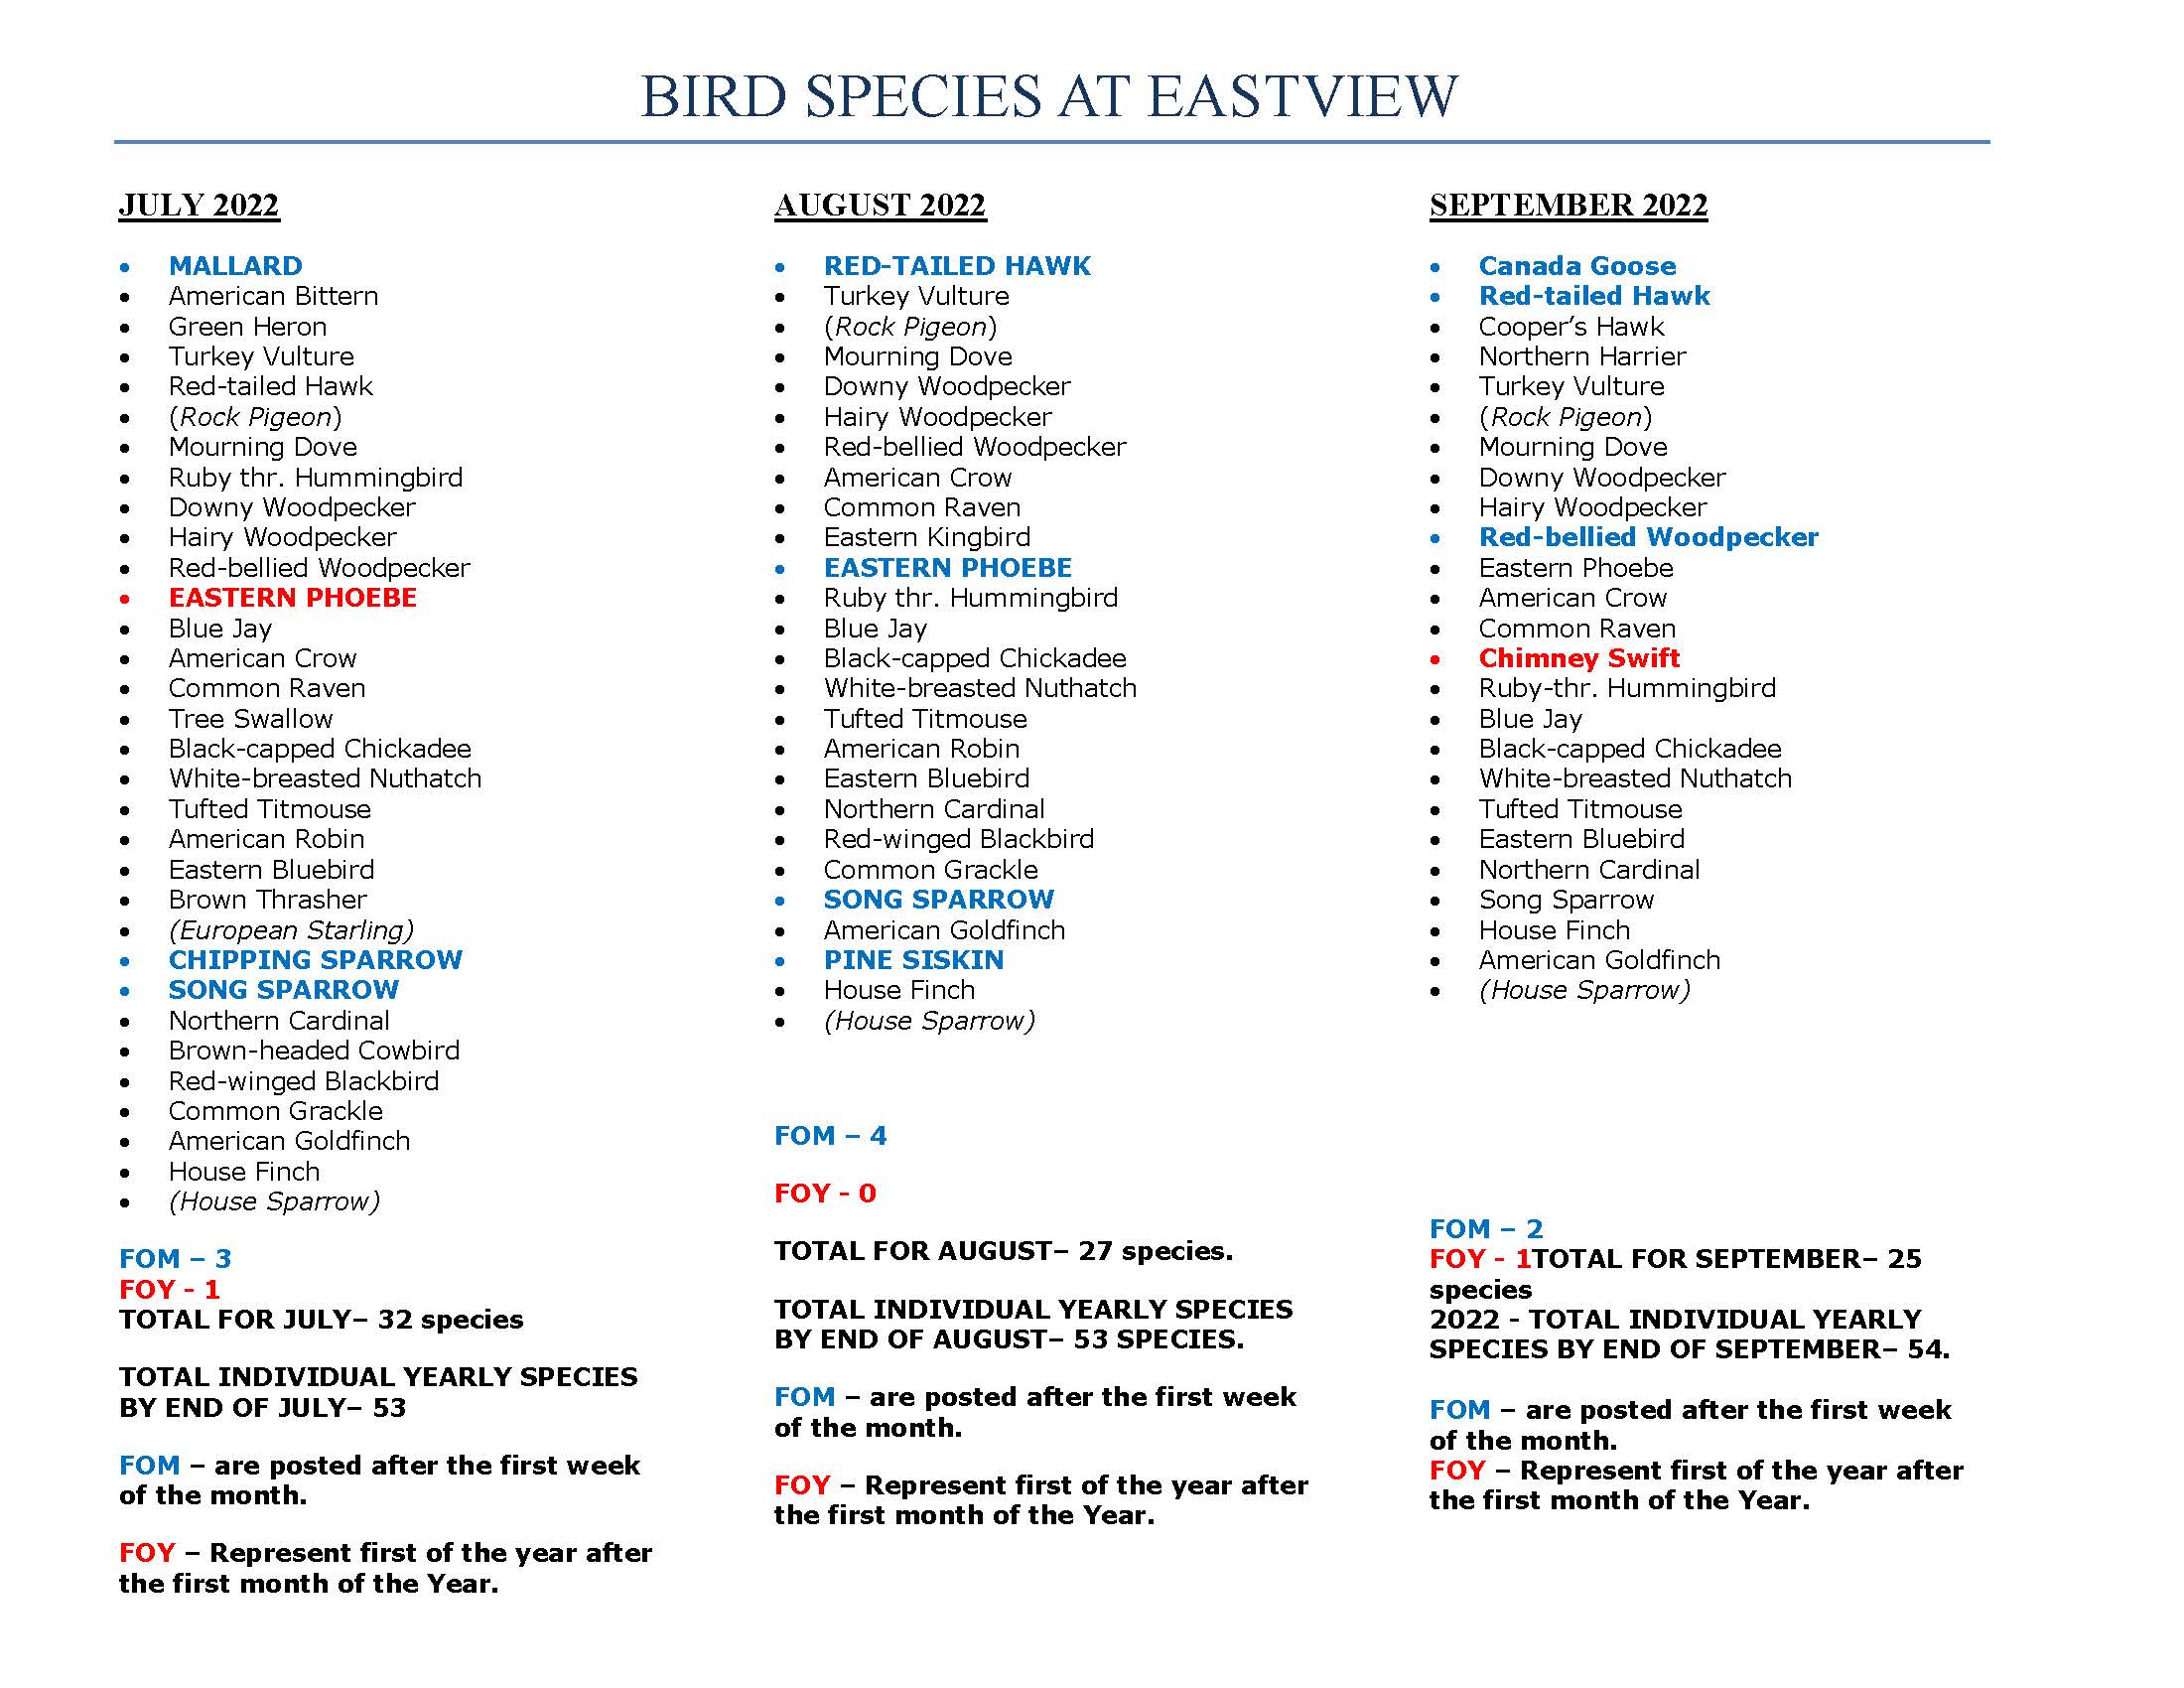 Bird Species at Eastview: Summer